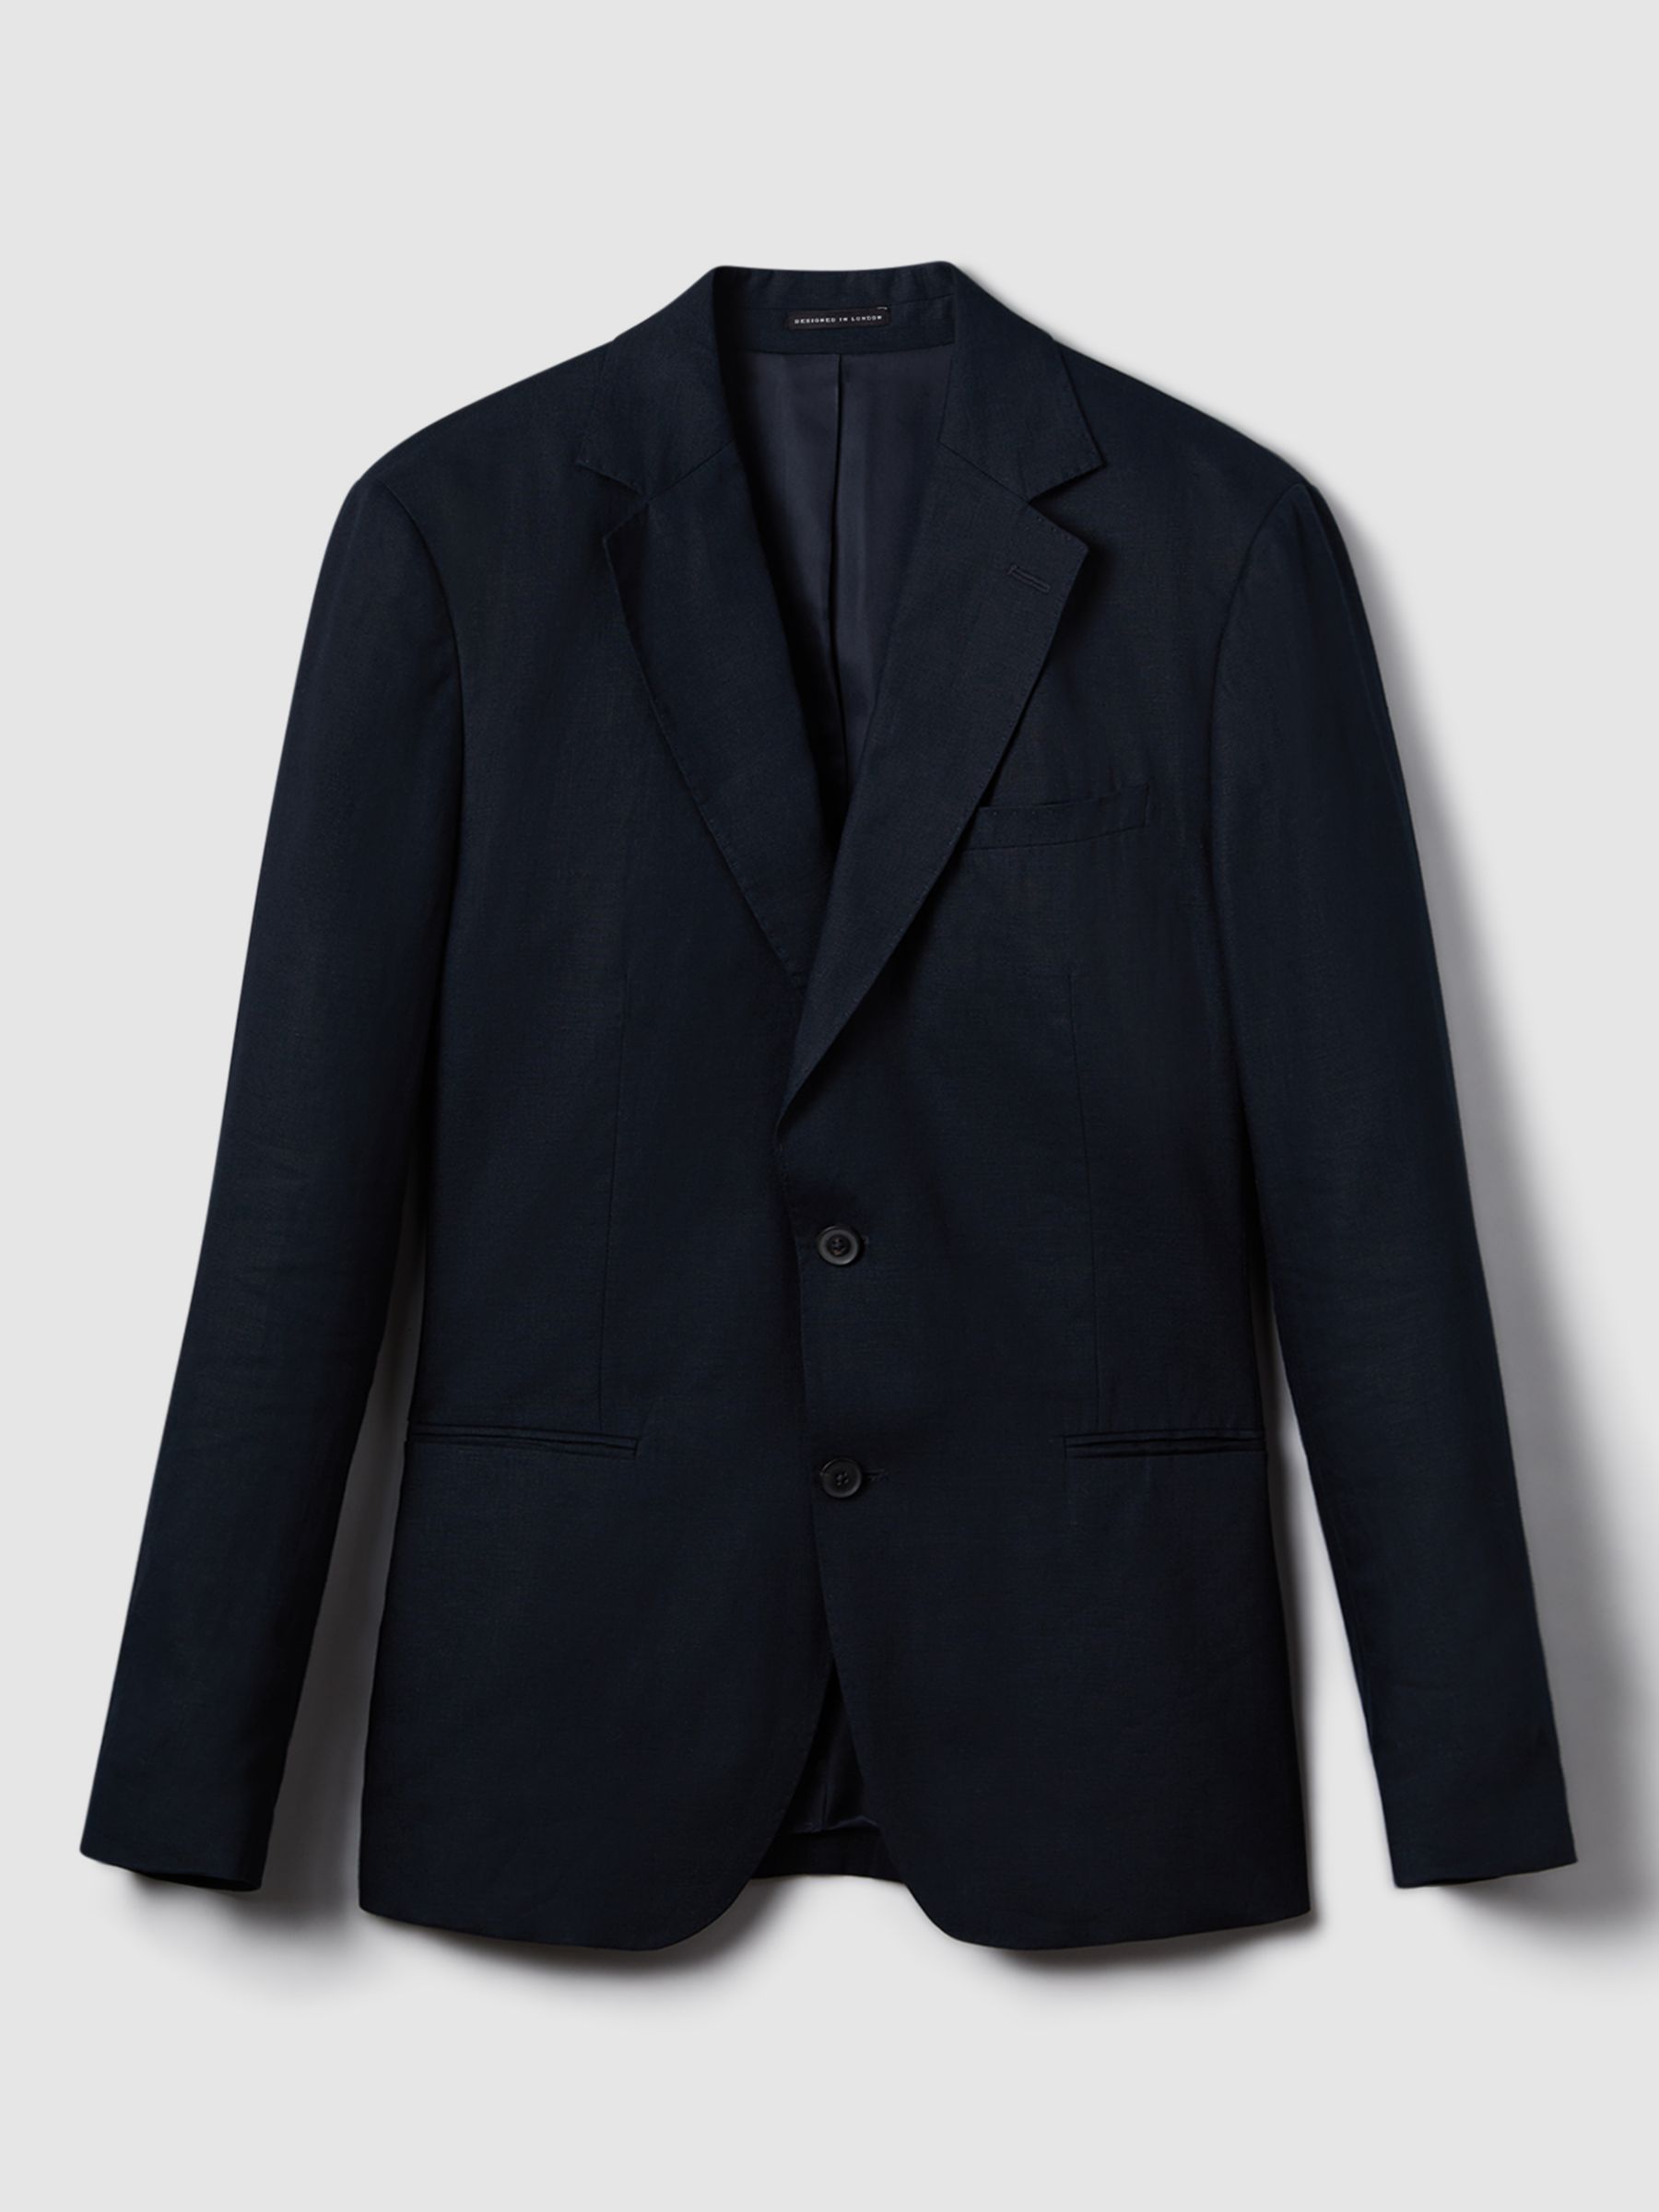 Reiss Kin Linen Tailored Jacket, Navy, 36